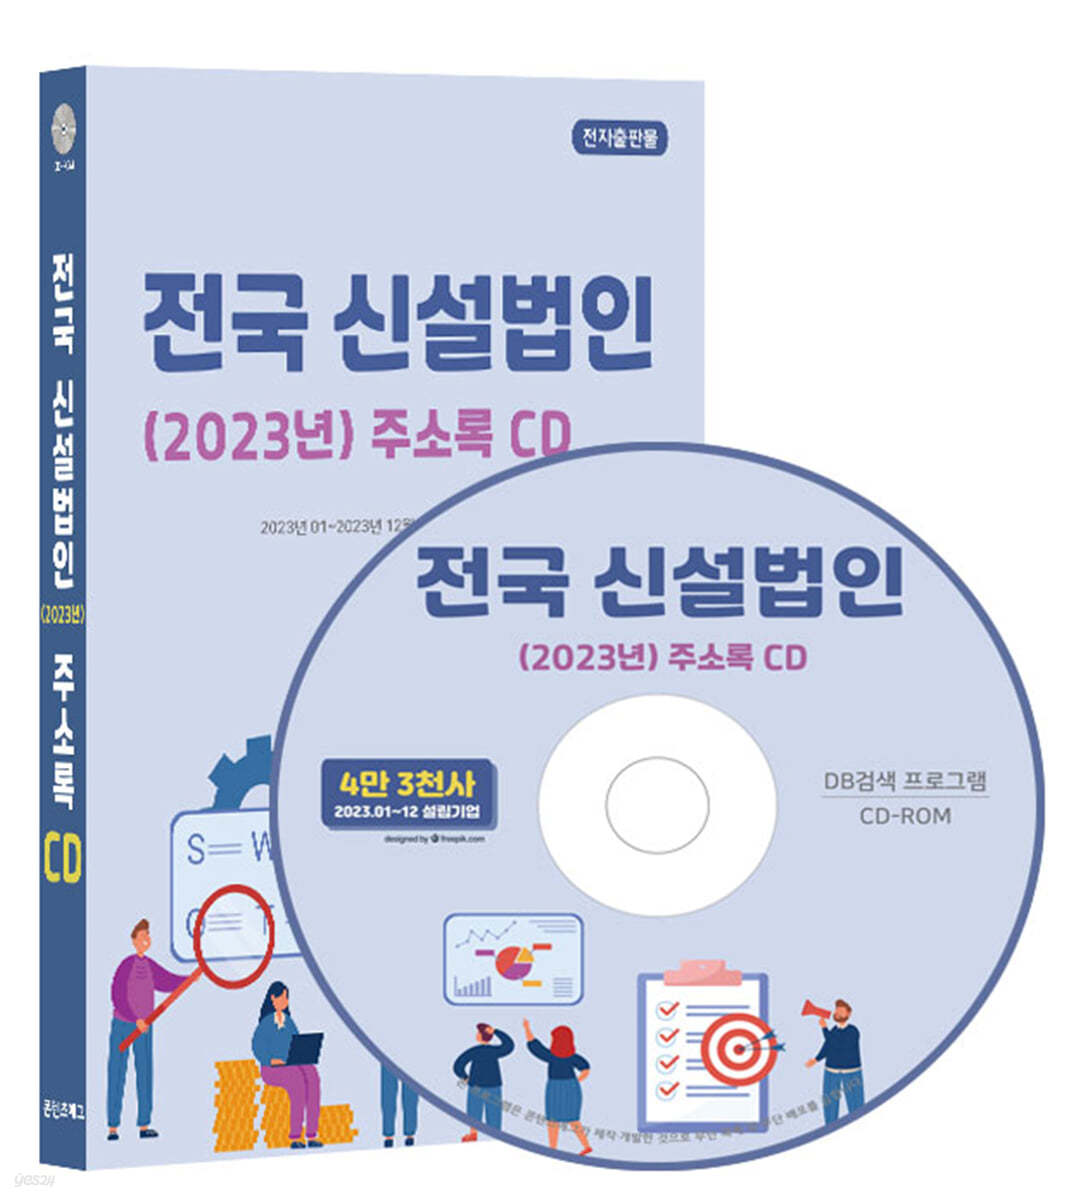 전국 신설법인(2023년) 주소록 CD